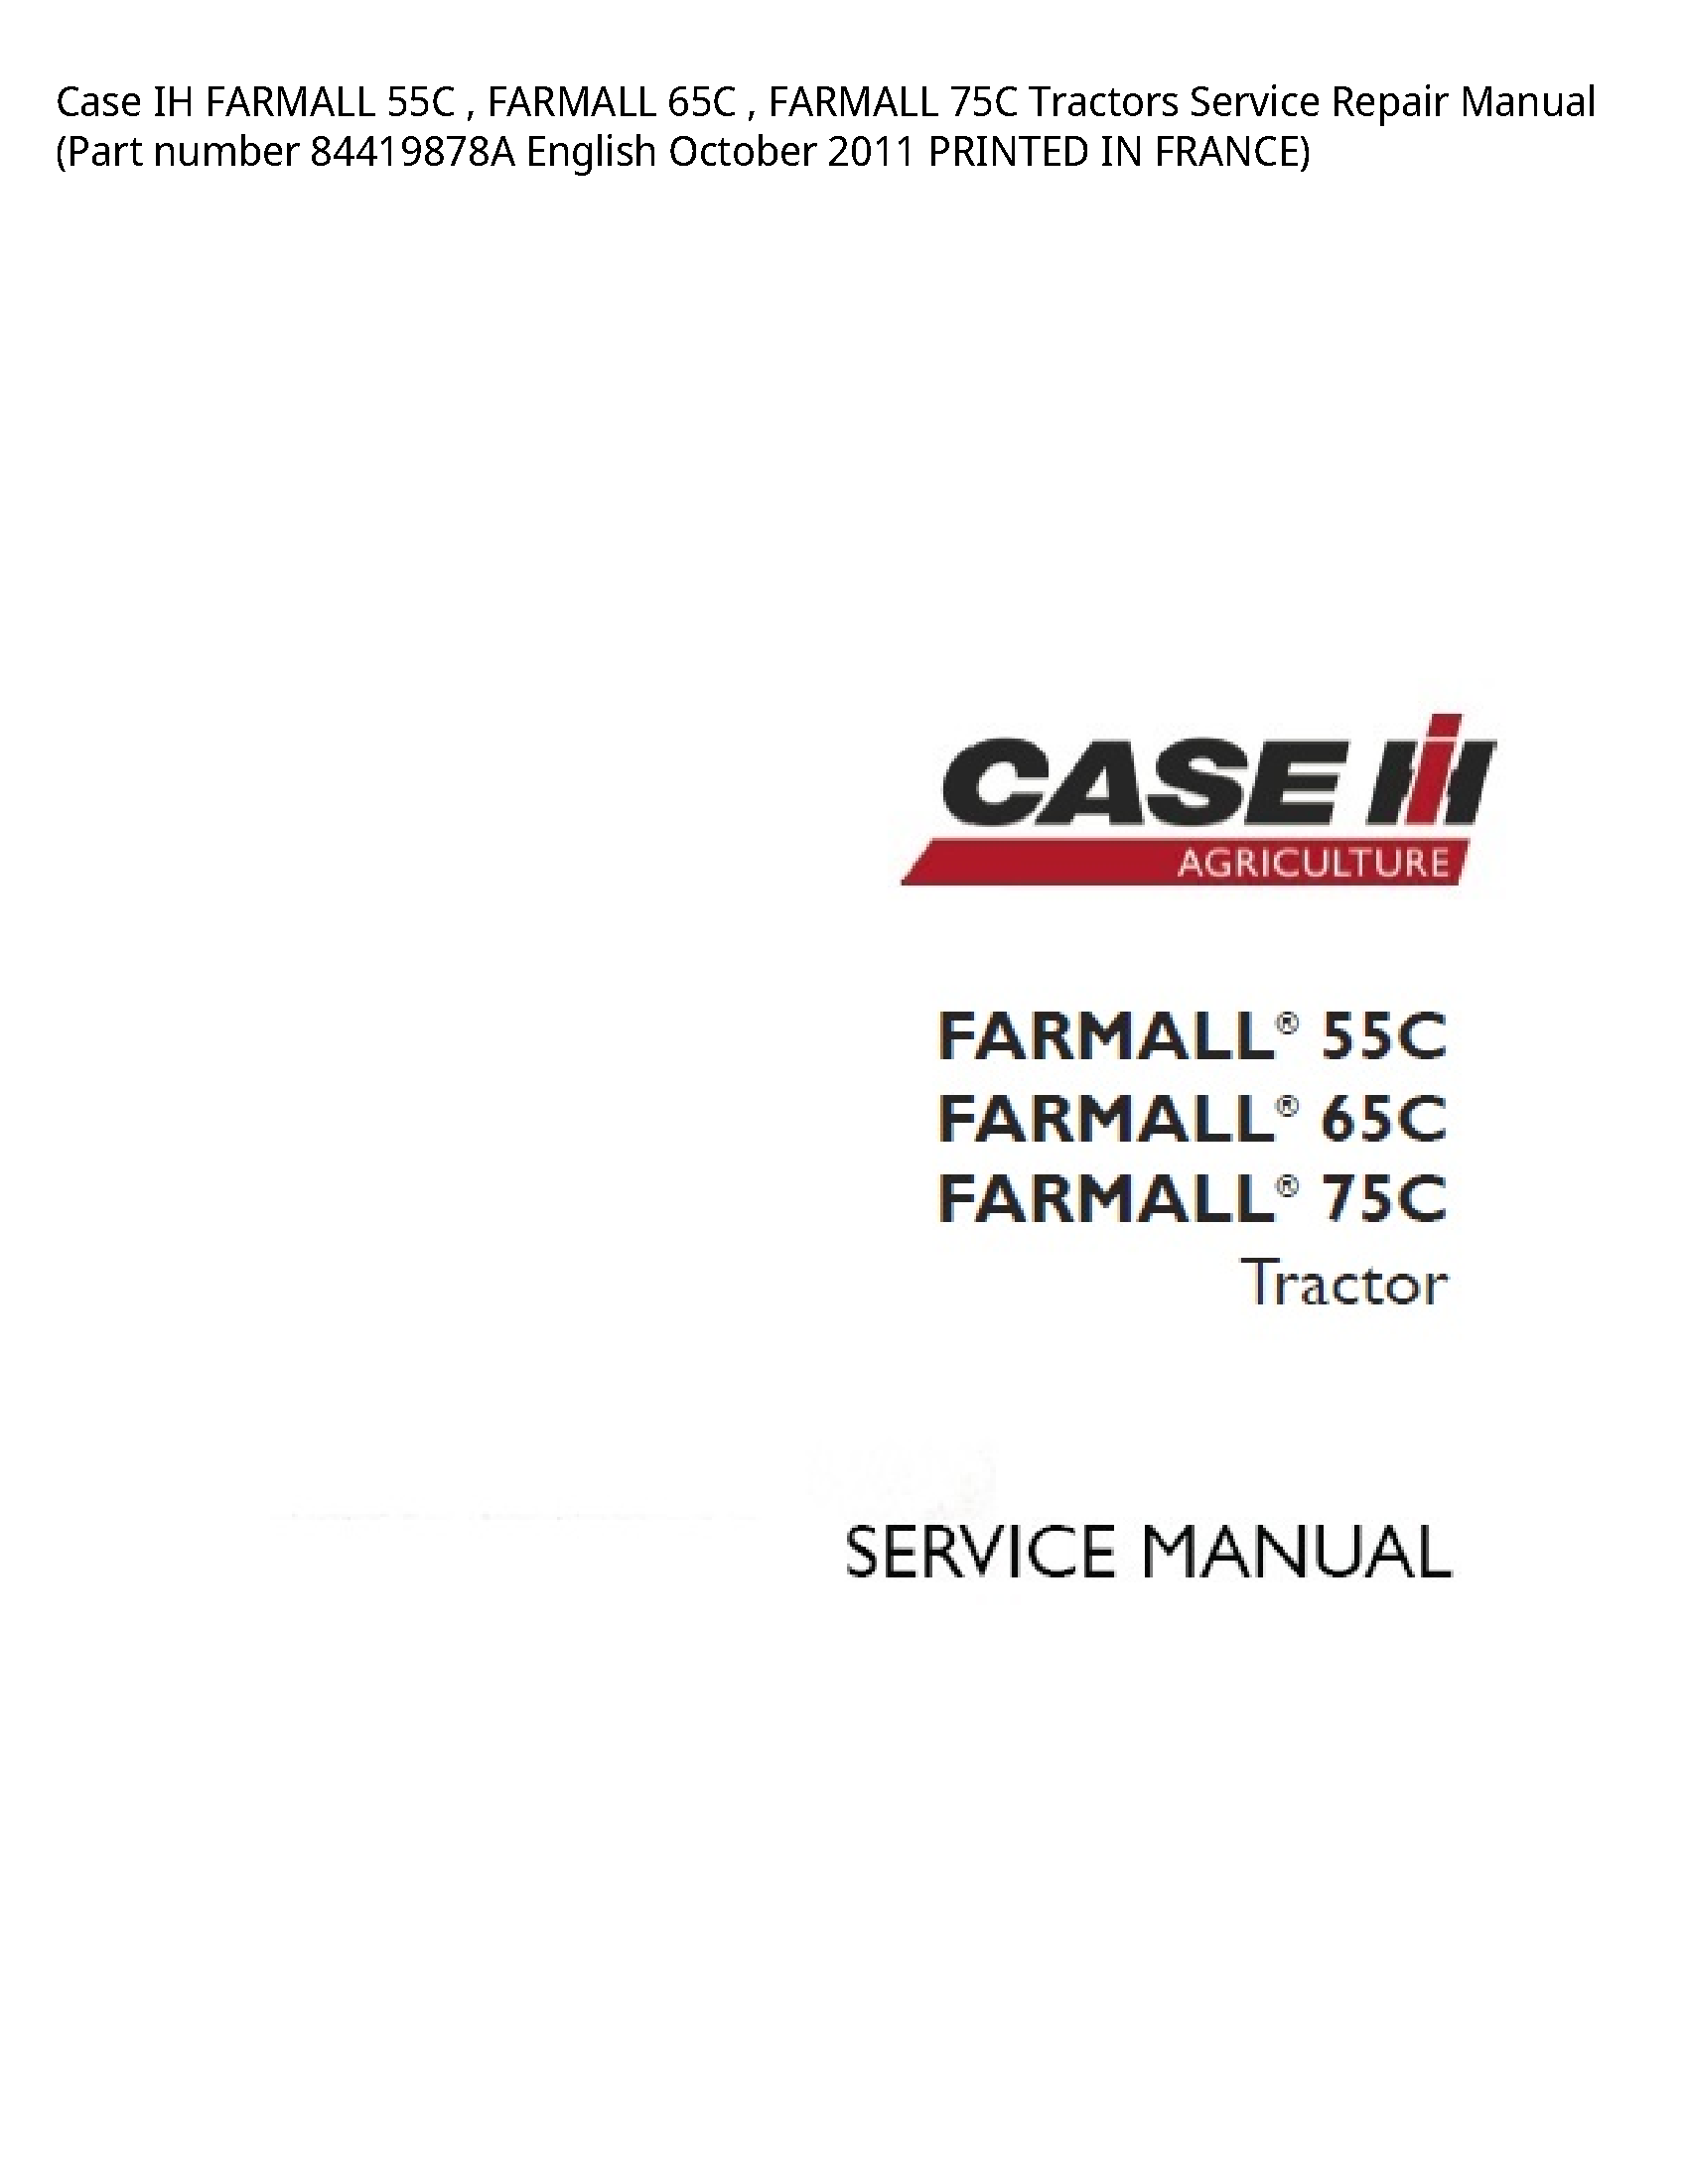 Case/Case IH 55C IH FARMALL FARMALL FARMALL Tractors manual